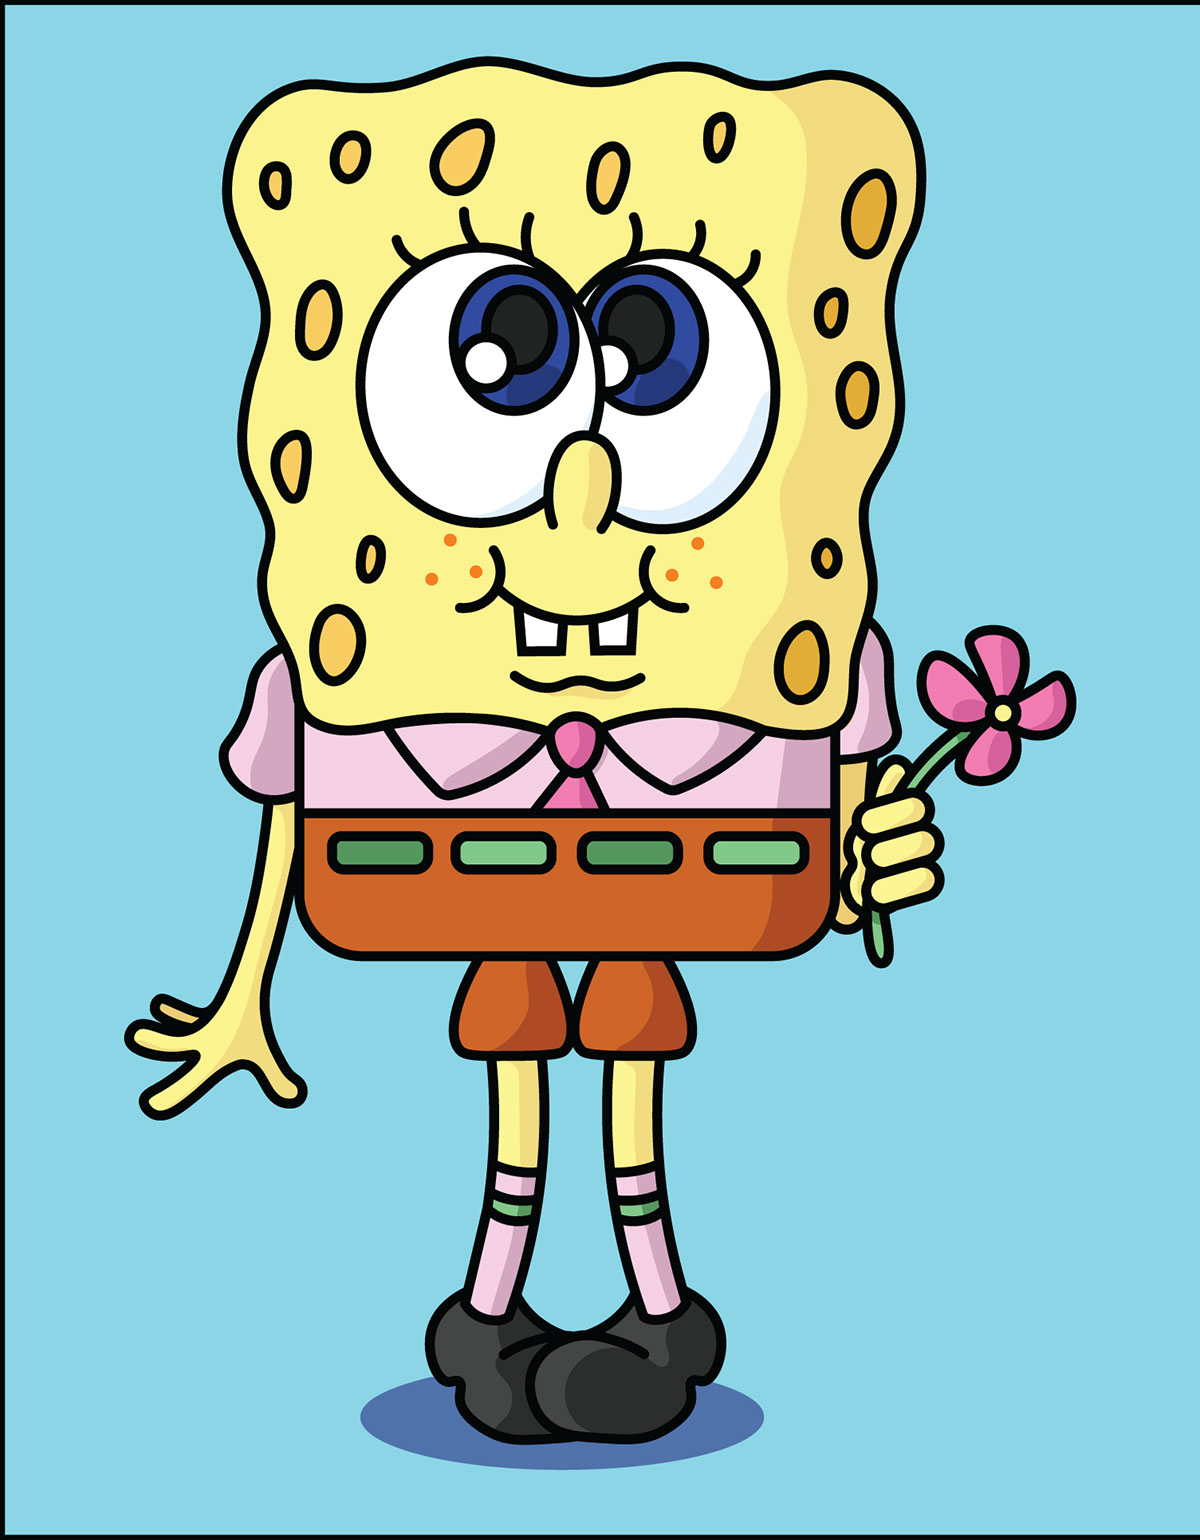 Valintines Spongebob Characters rendition image